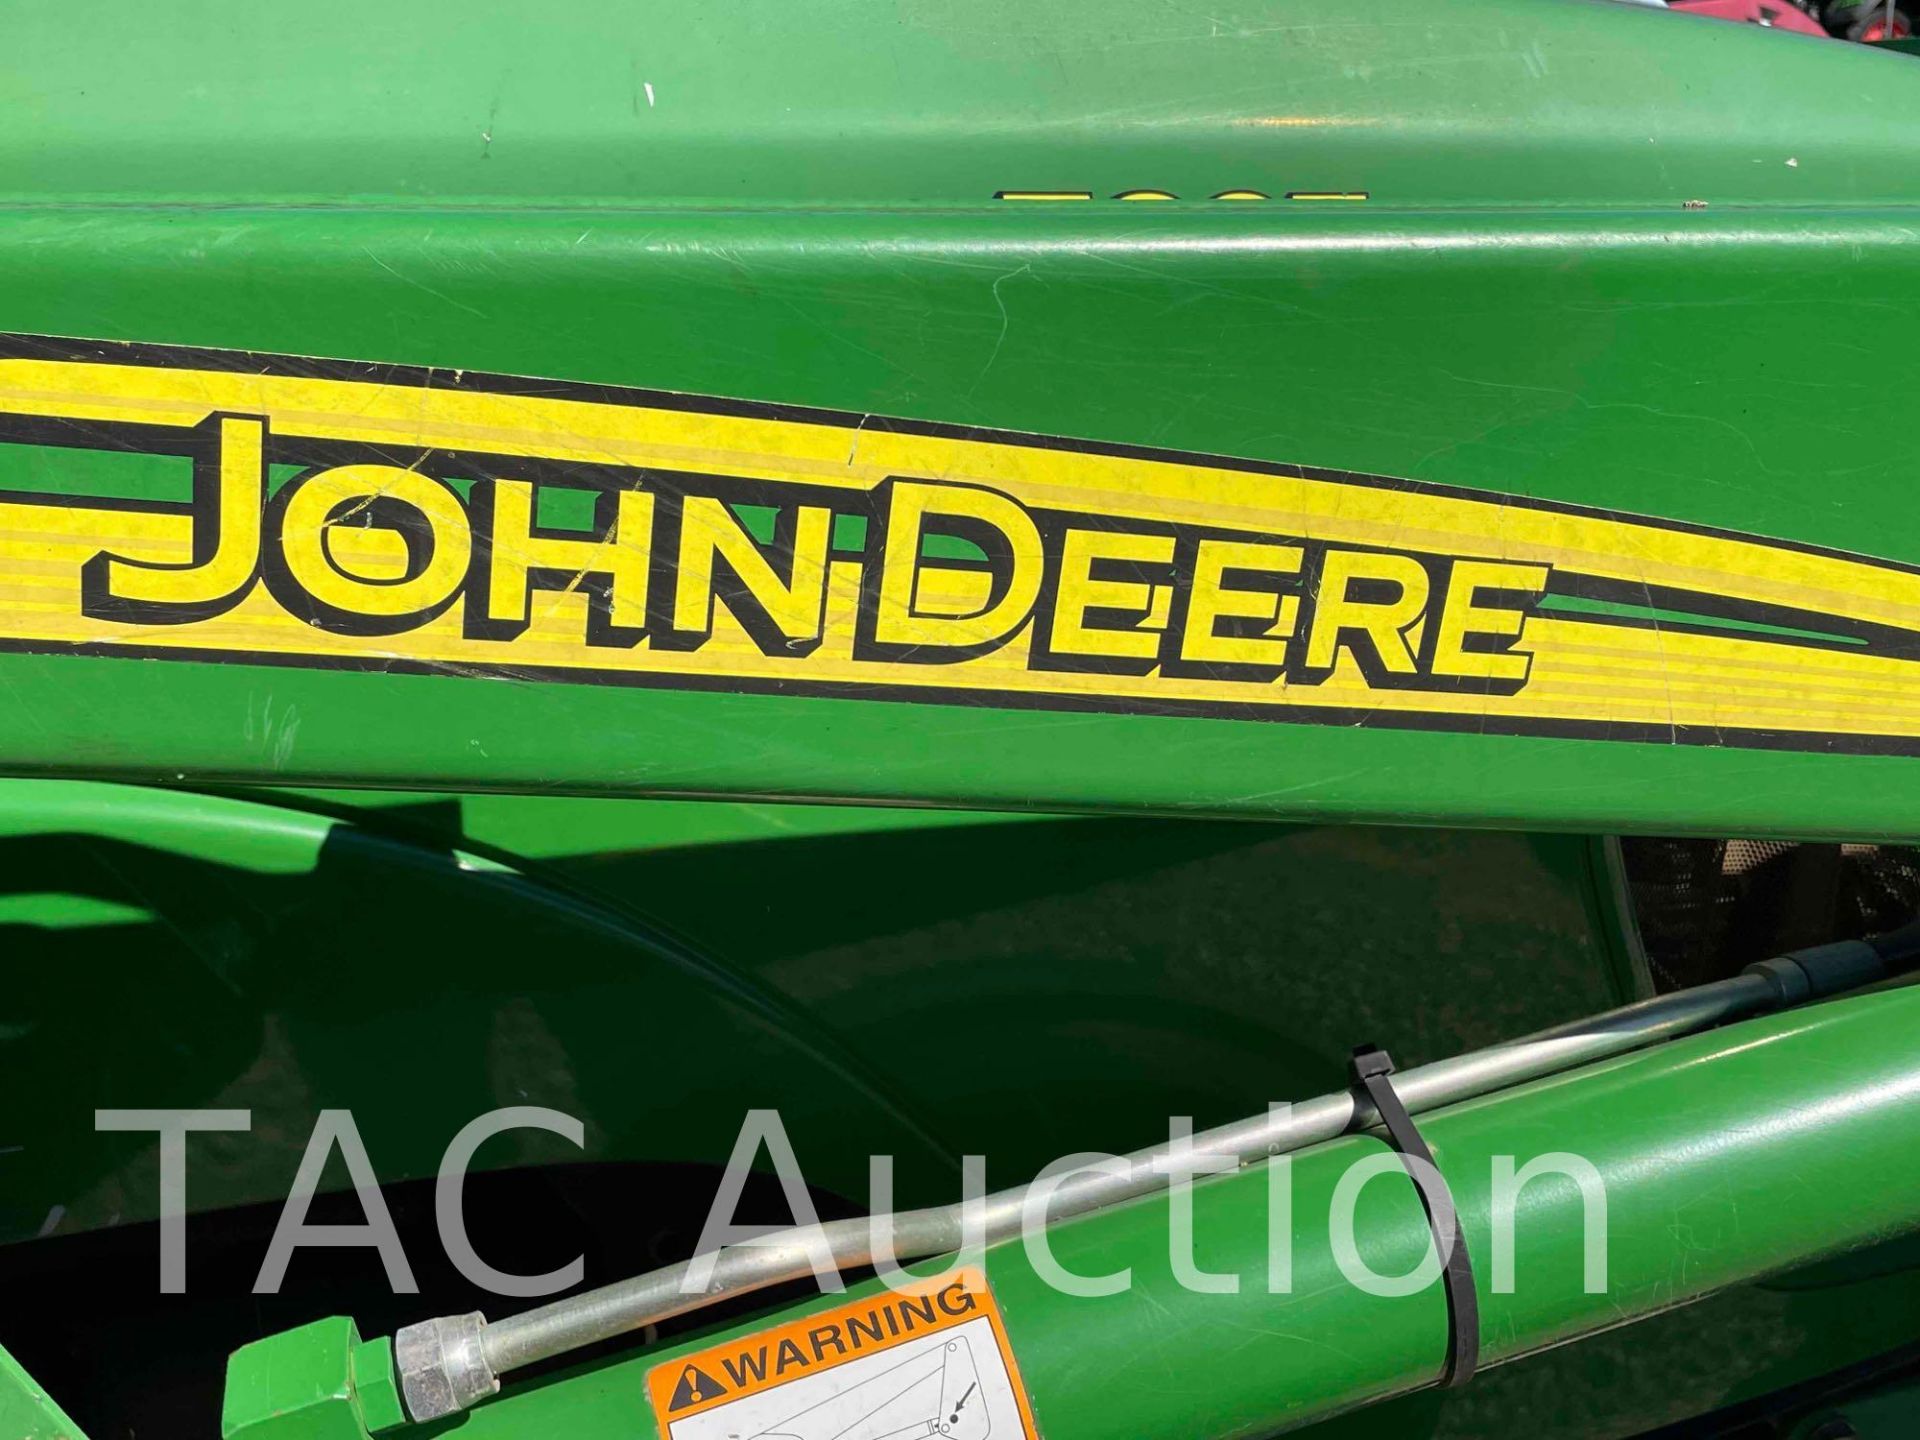 John Deere 5325 Tractor W/ Front End Loader - Image 23 of 41